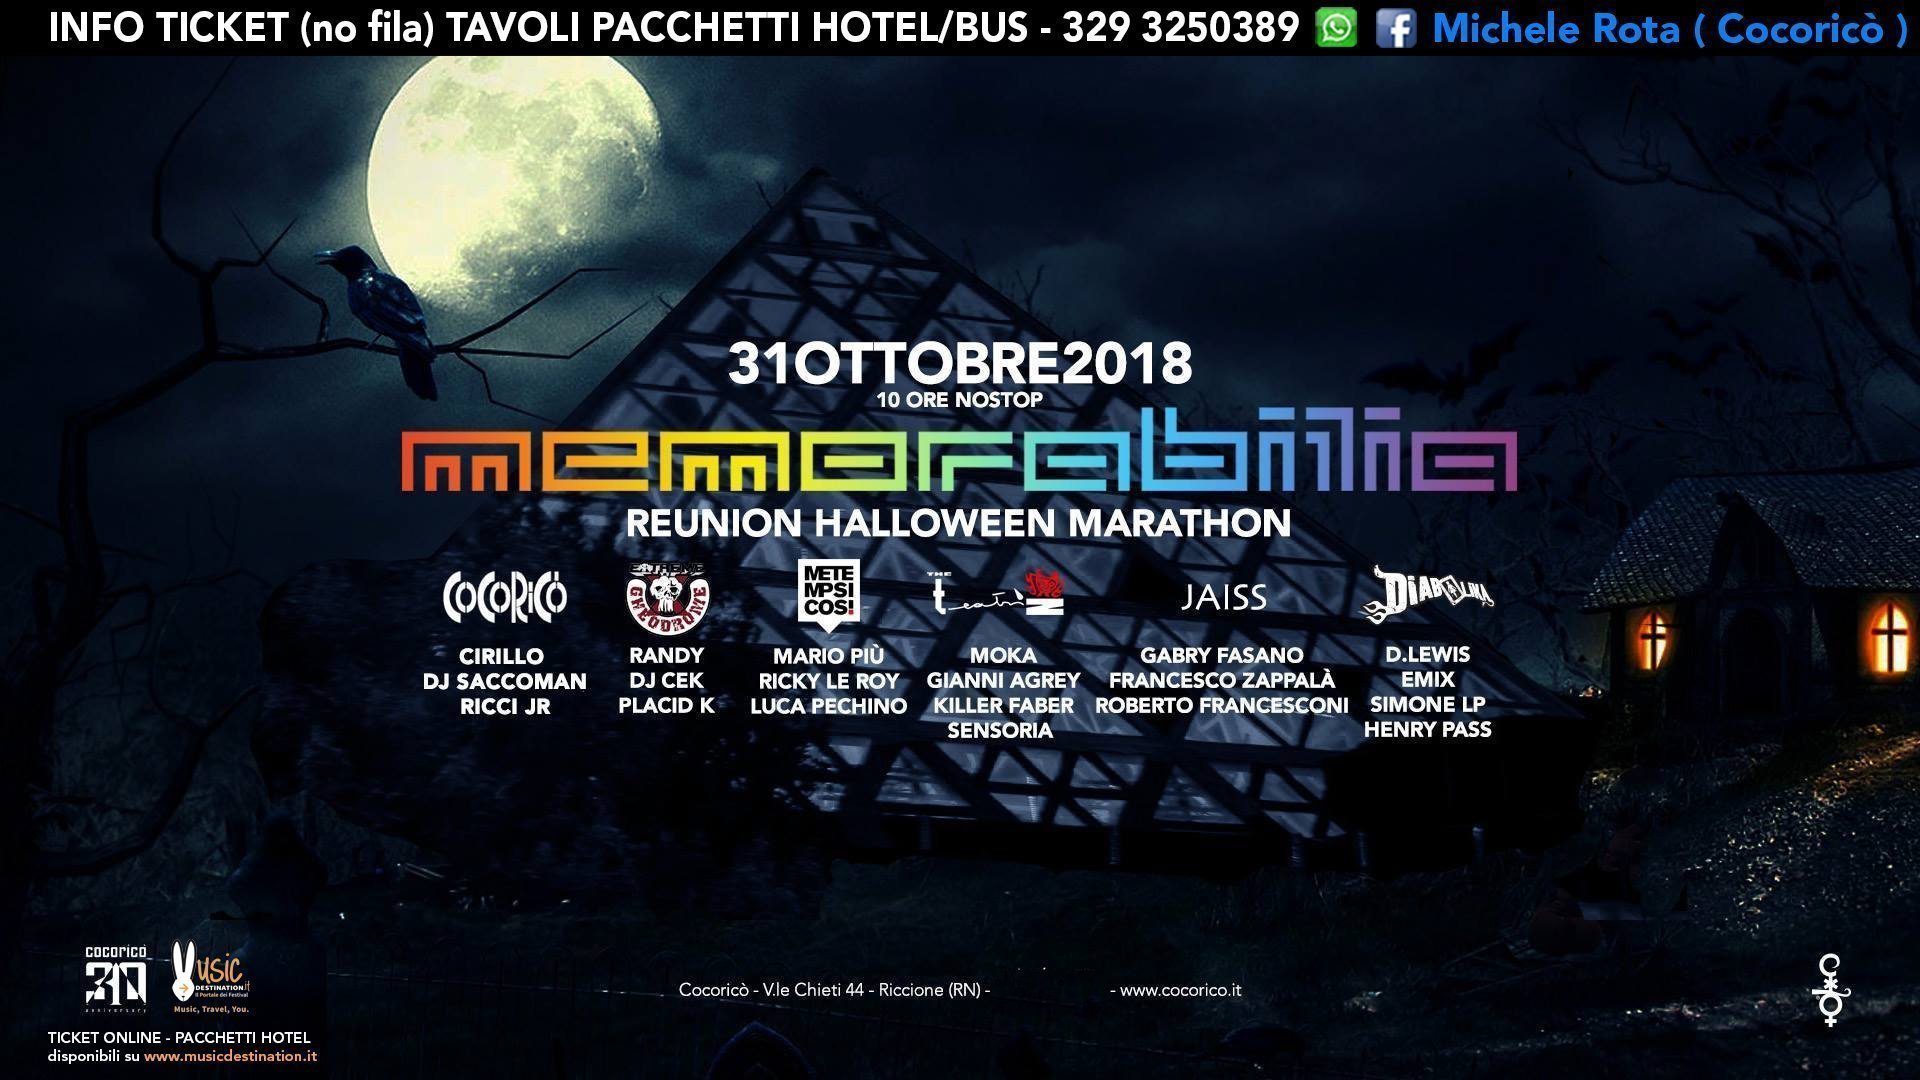 Memorabilia Cocorico Halloween 2018 Ticket Pacchetti Hotel